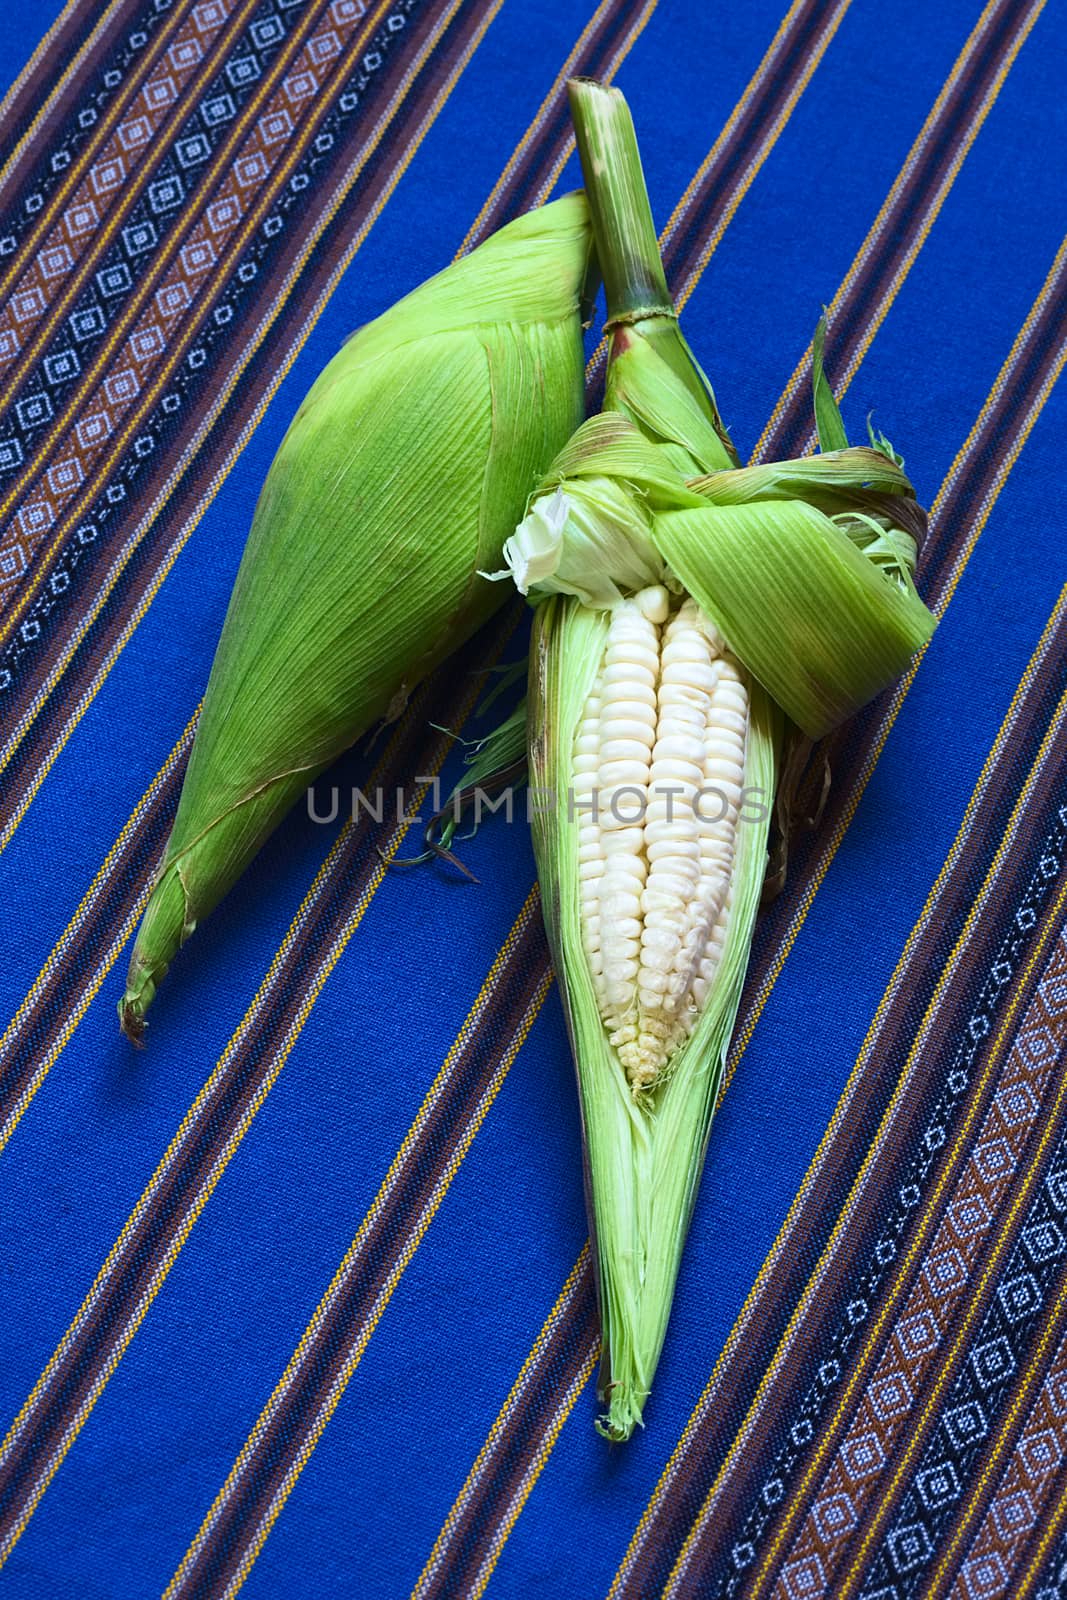 White Corn Called Choclo (Peruvian or Cuzco Corn) by ildi